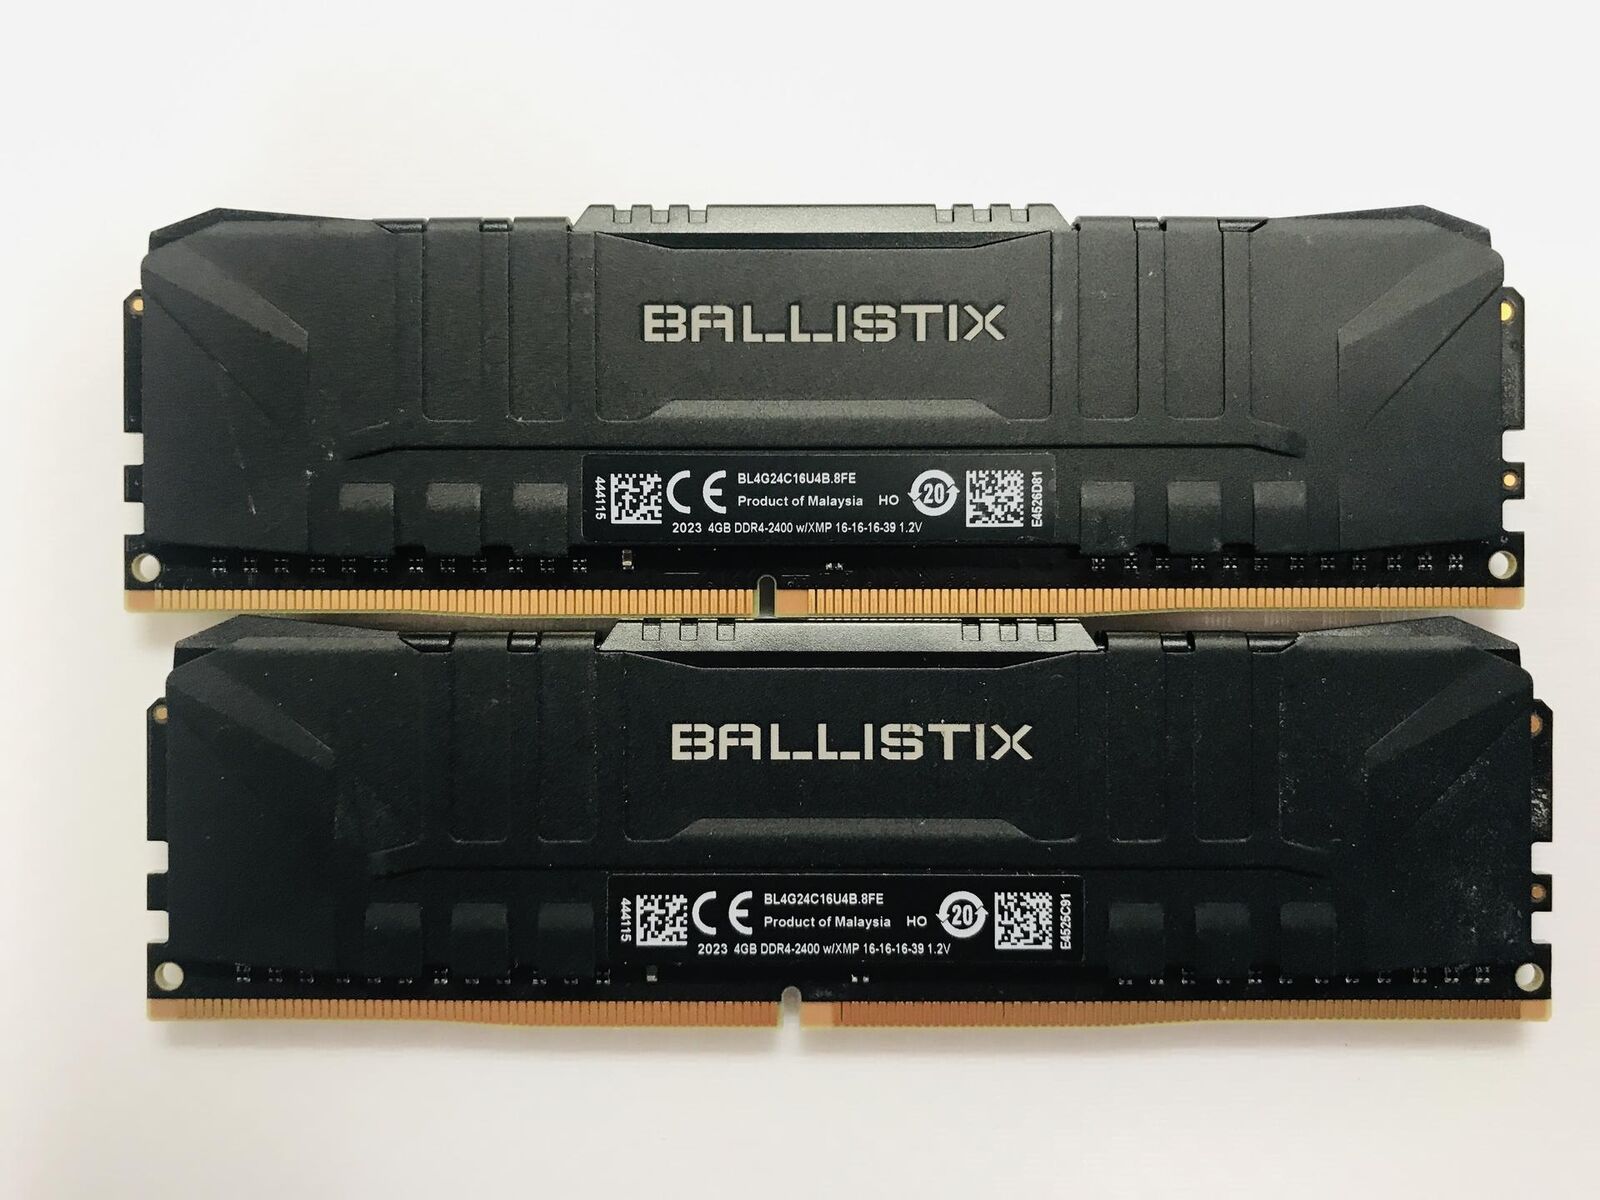 Crucial Ballistix 8GB (2x4GB) DDR4 RAM 2666MHz (BL4G24C16U4B.8FE)